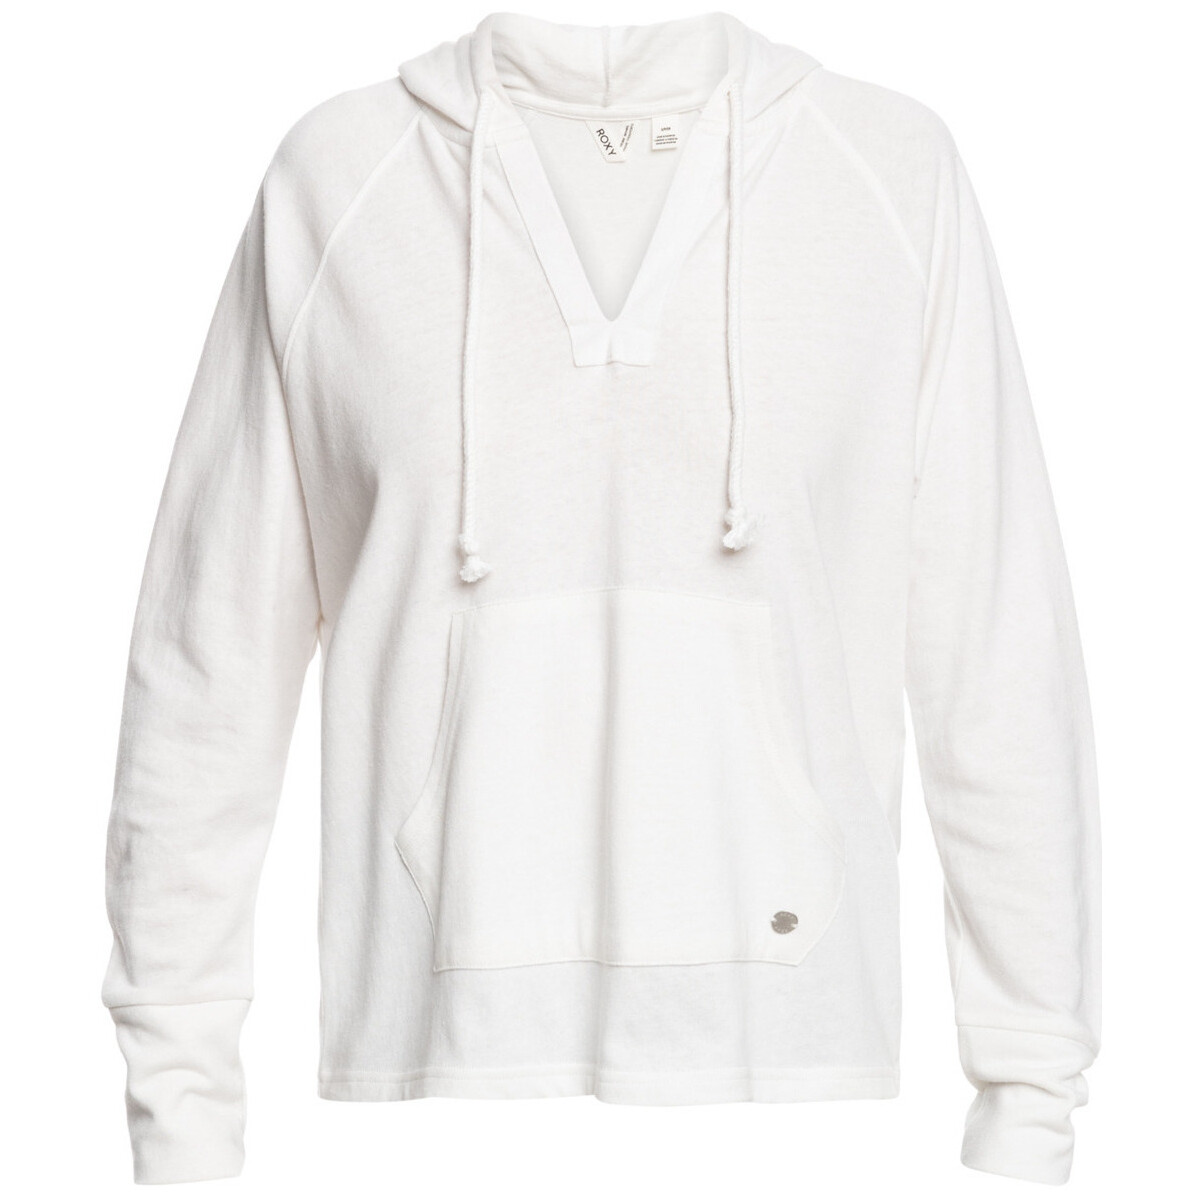 Vêtements Fille T-shirts manches courtes Roxy Destination Surf Blanc